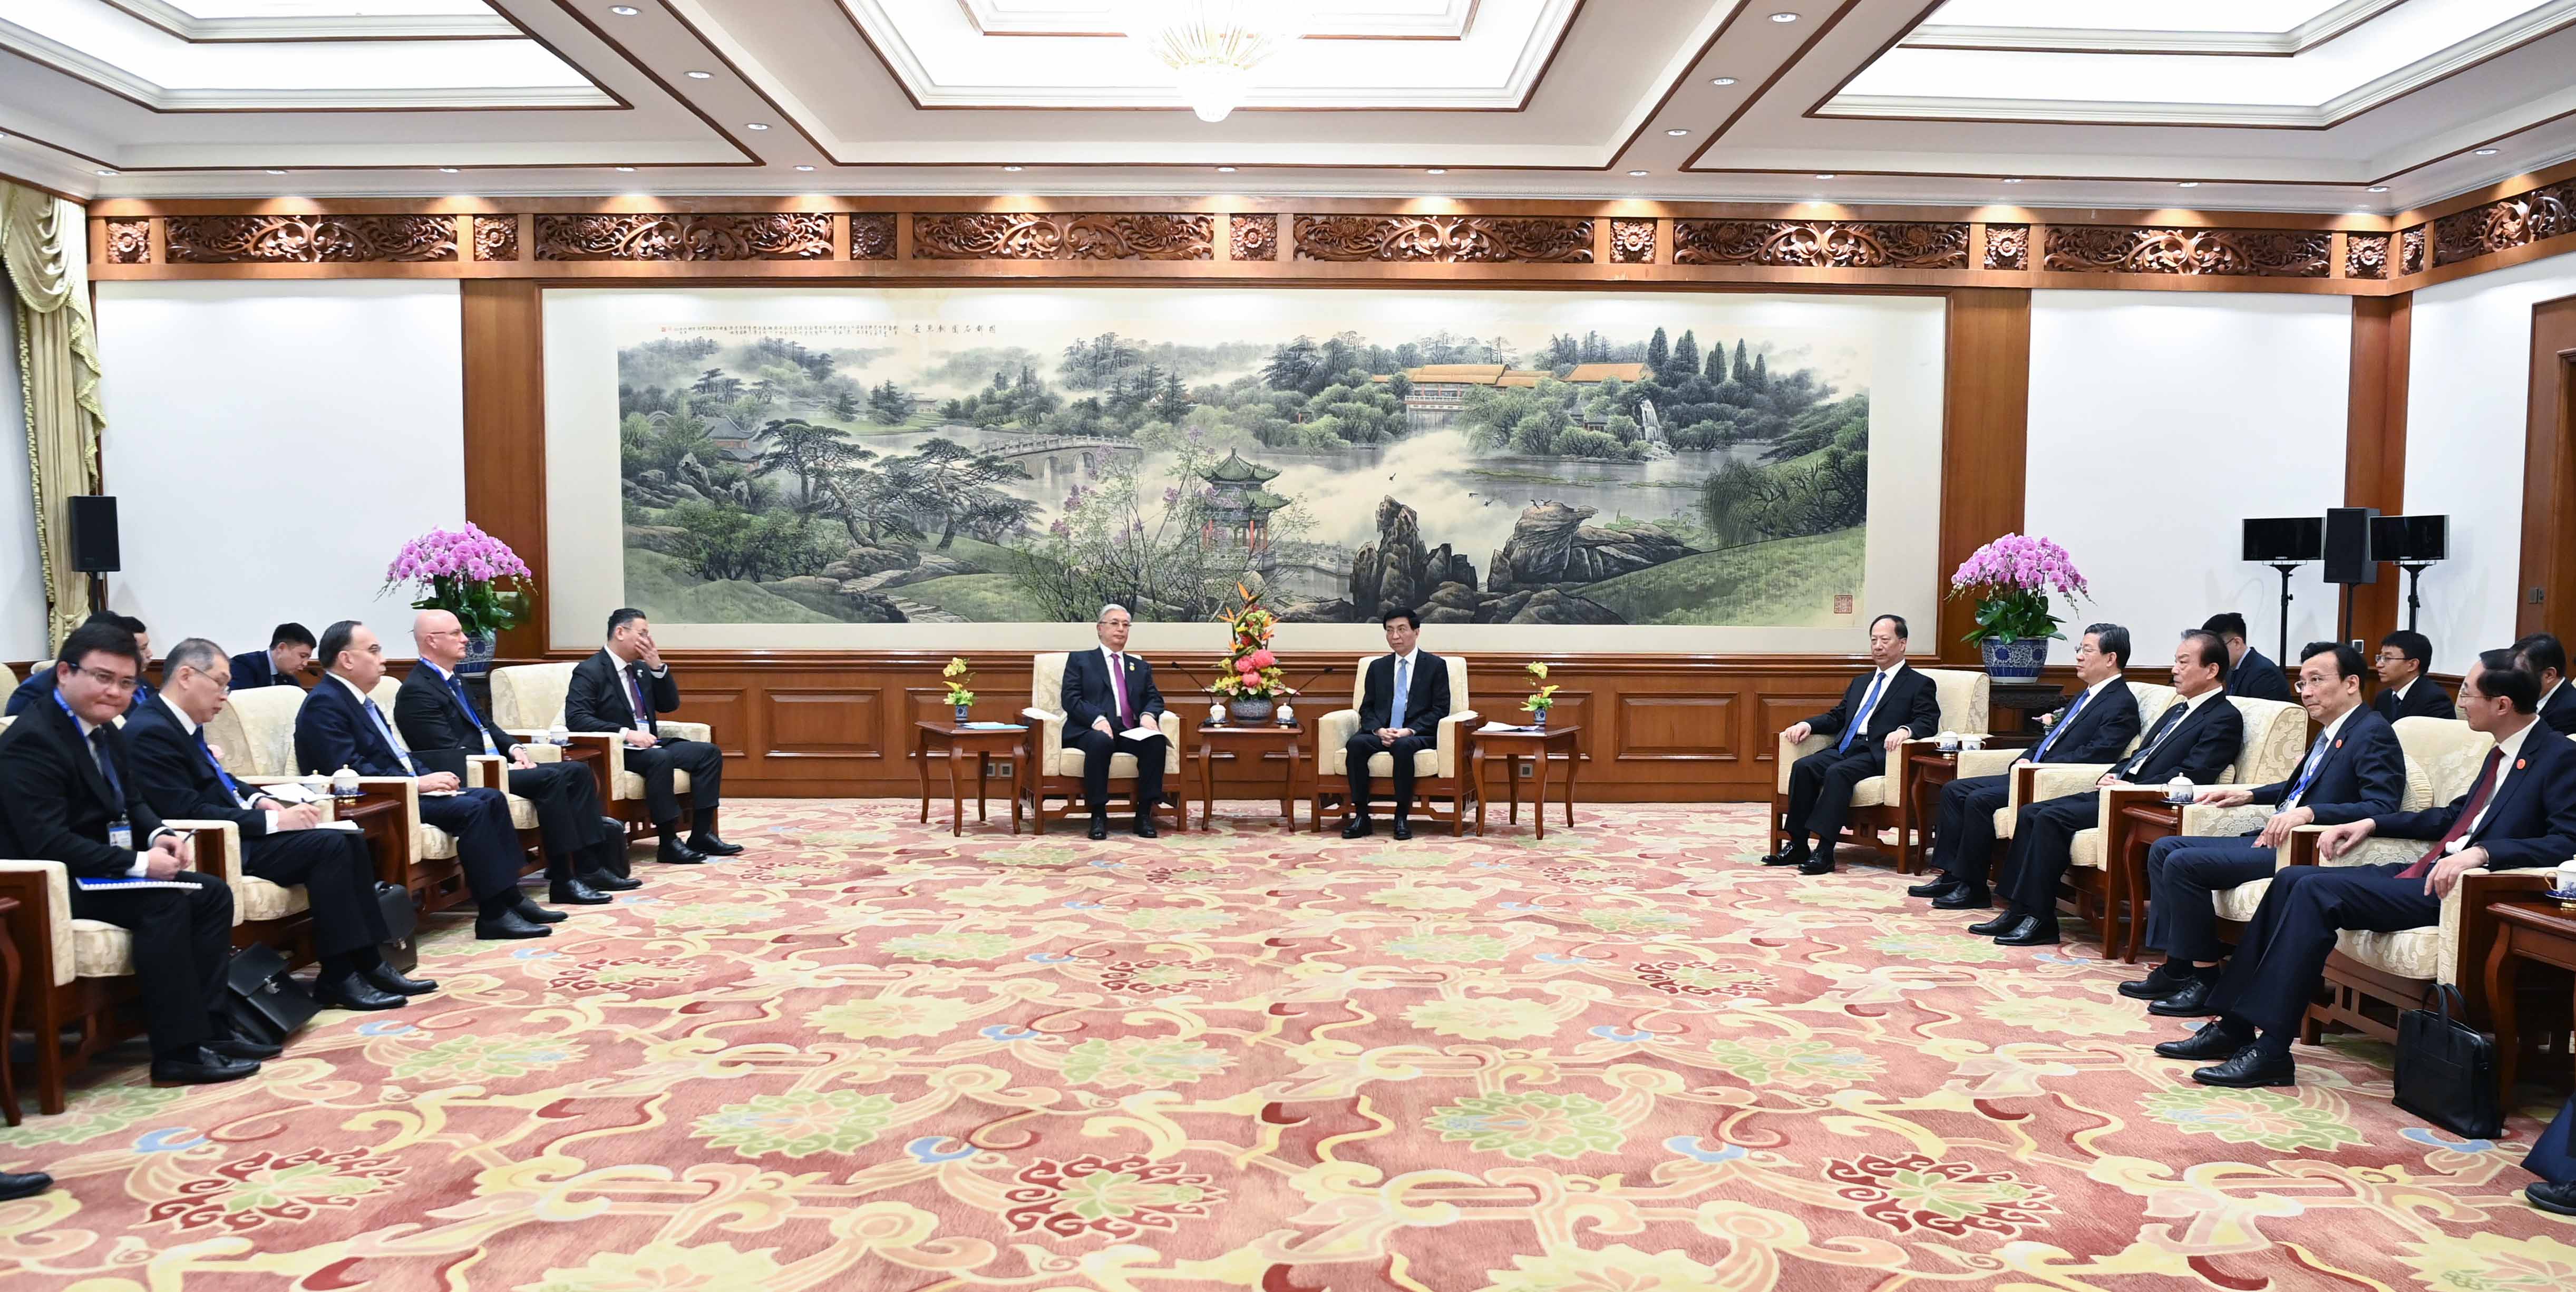 President Tokayev and Chairman Wang Huning commemorate thriving diplomatic ties between Kazakhstan and China 